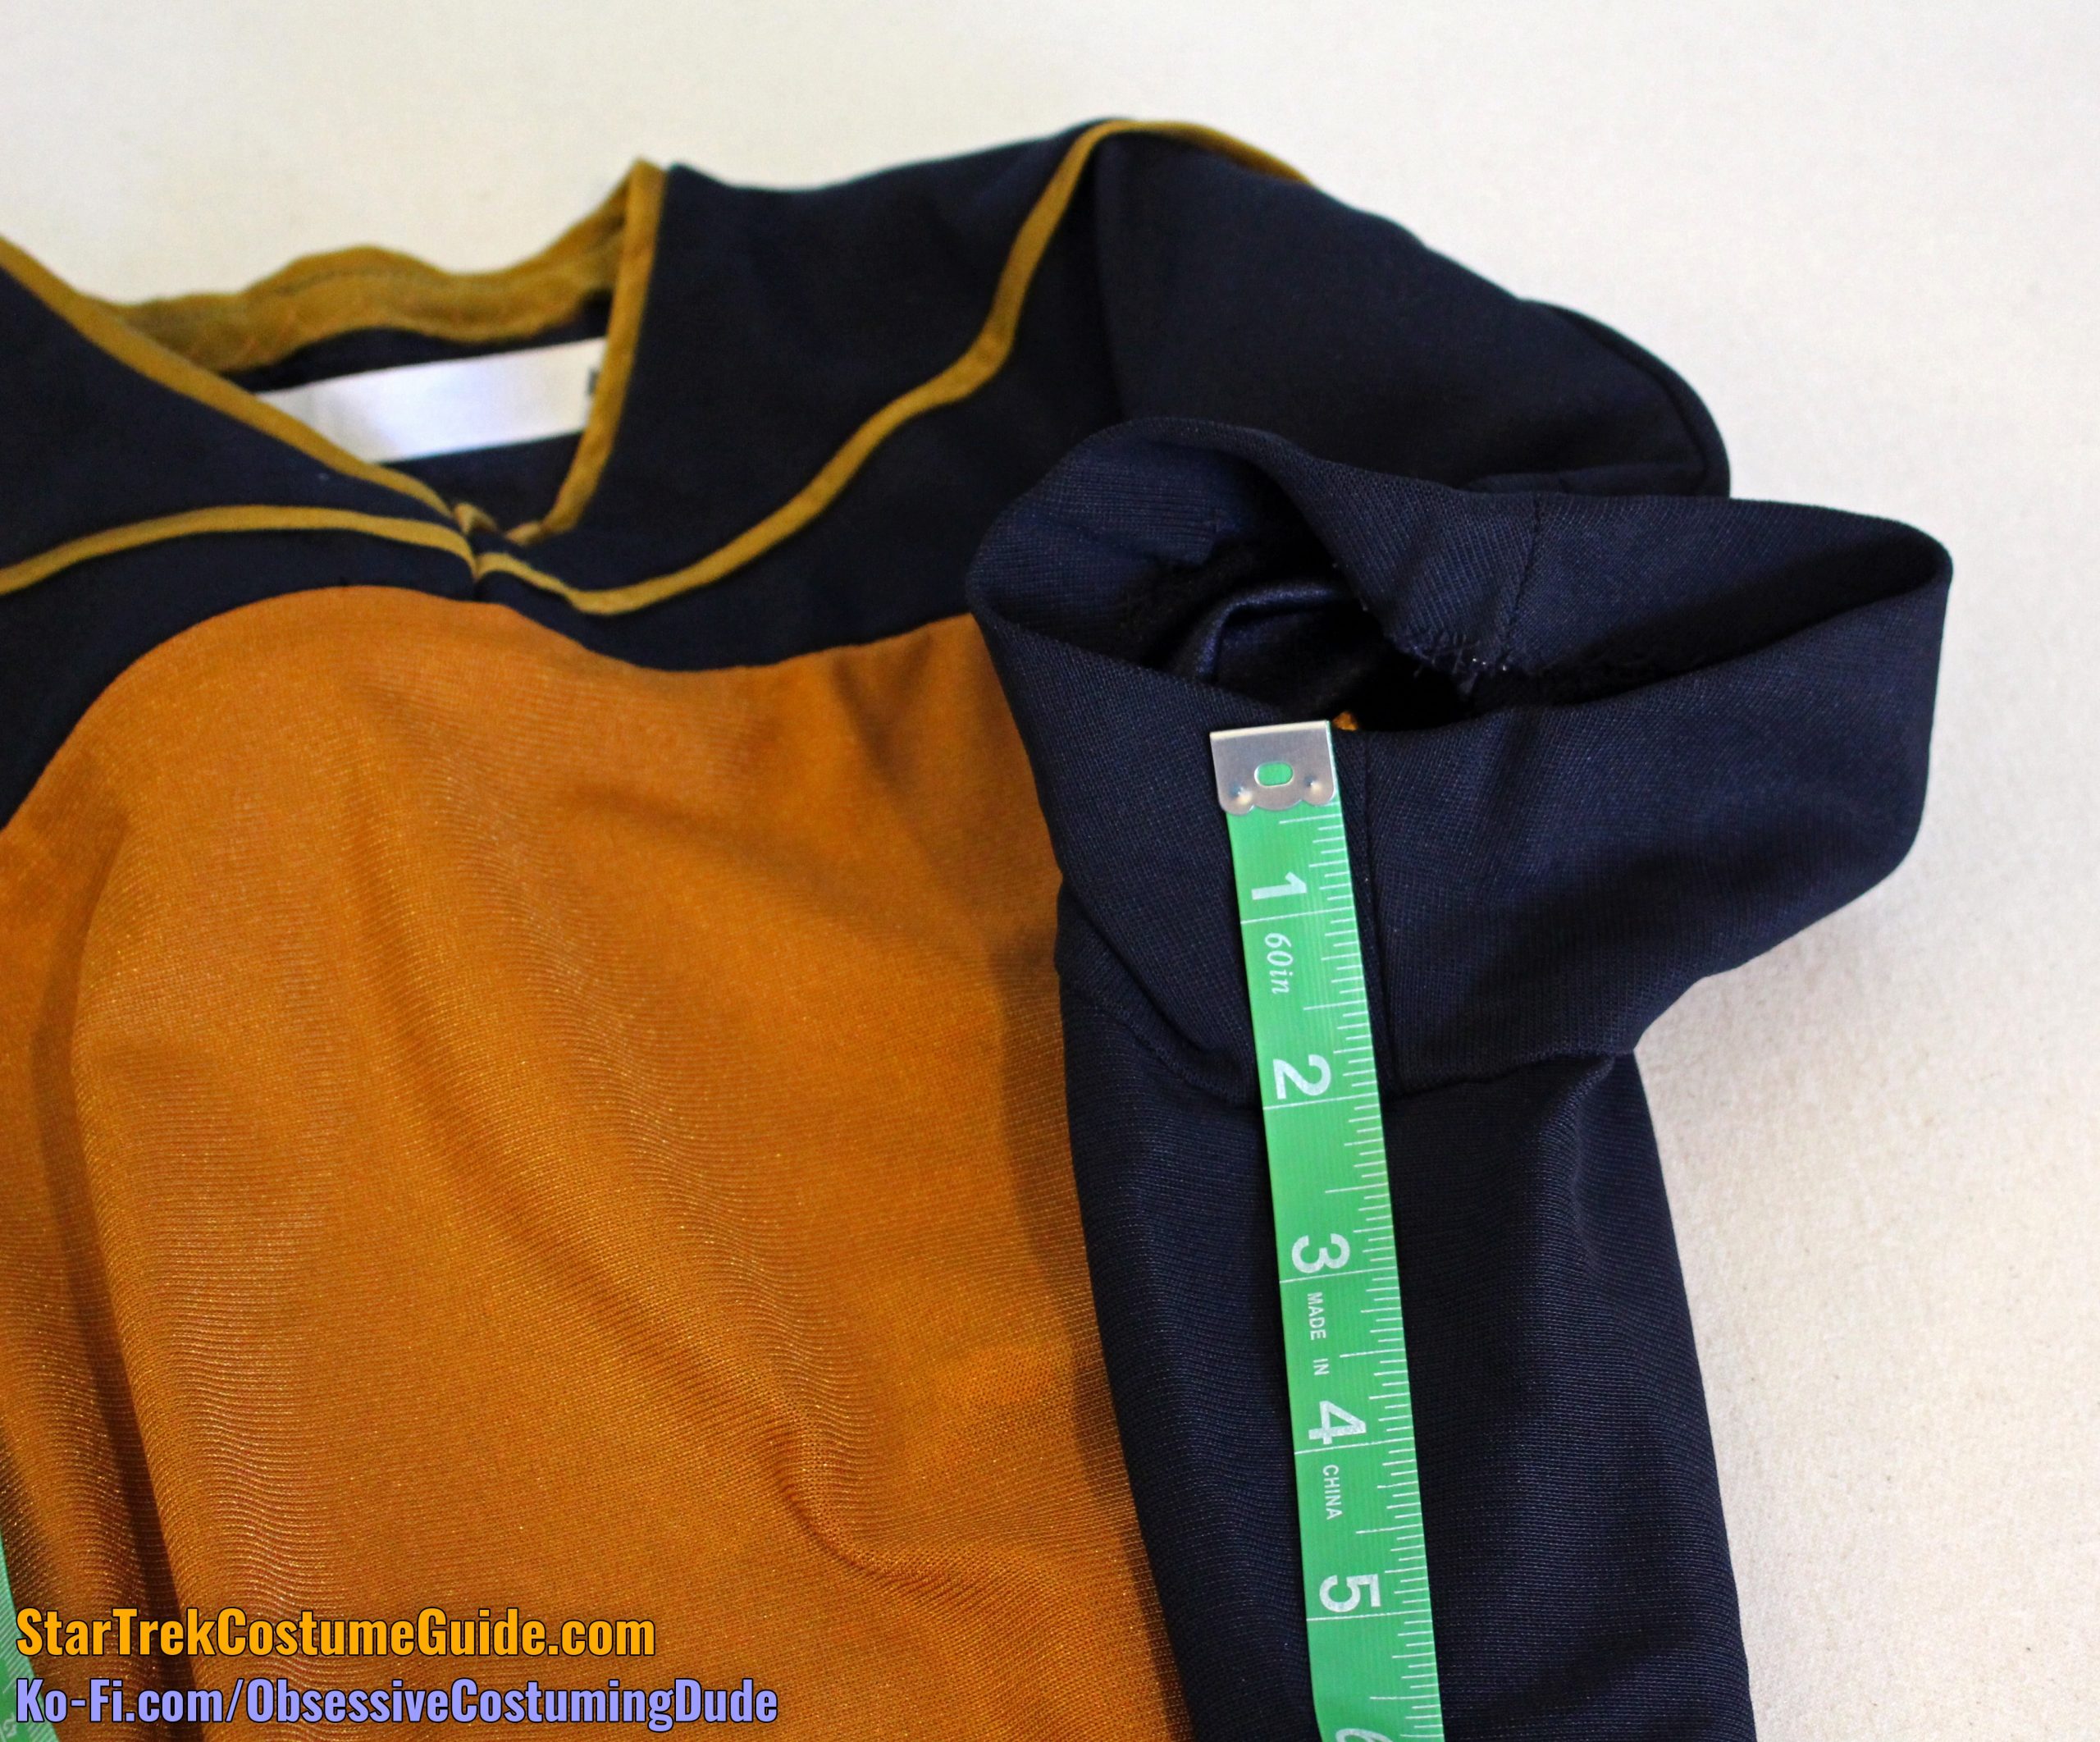 TNG skant uniform examination - Star Trek Costume Guide